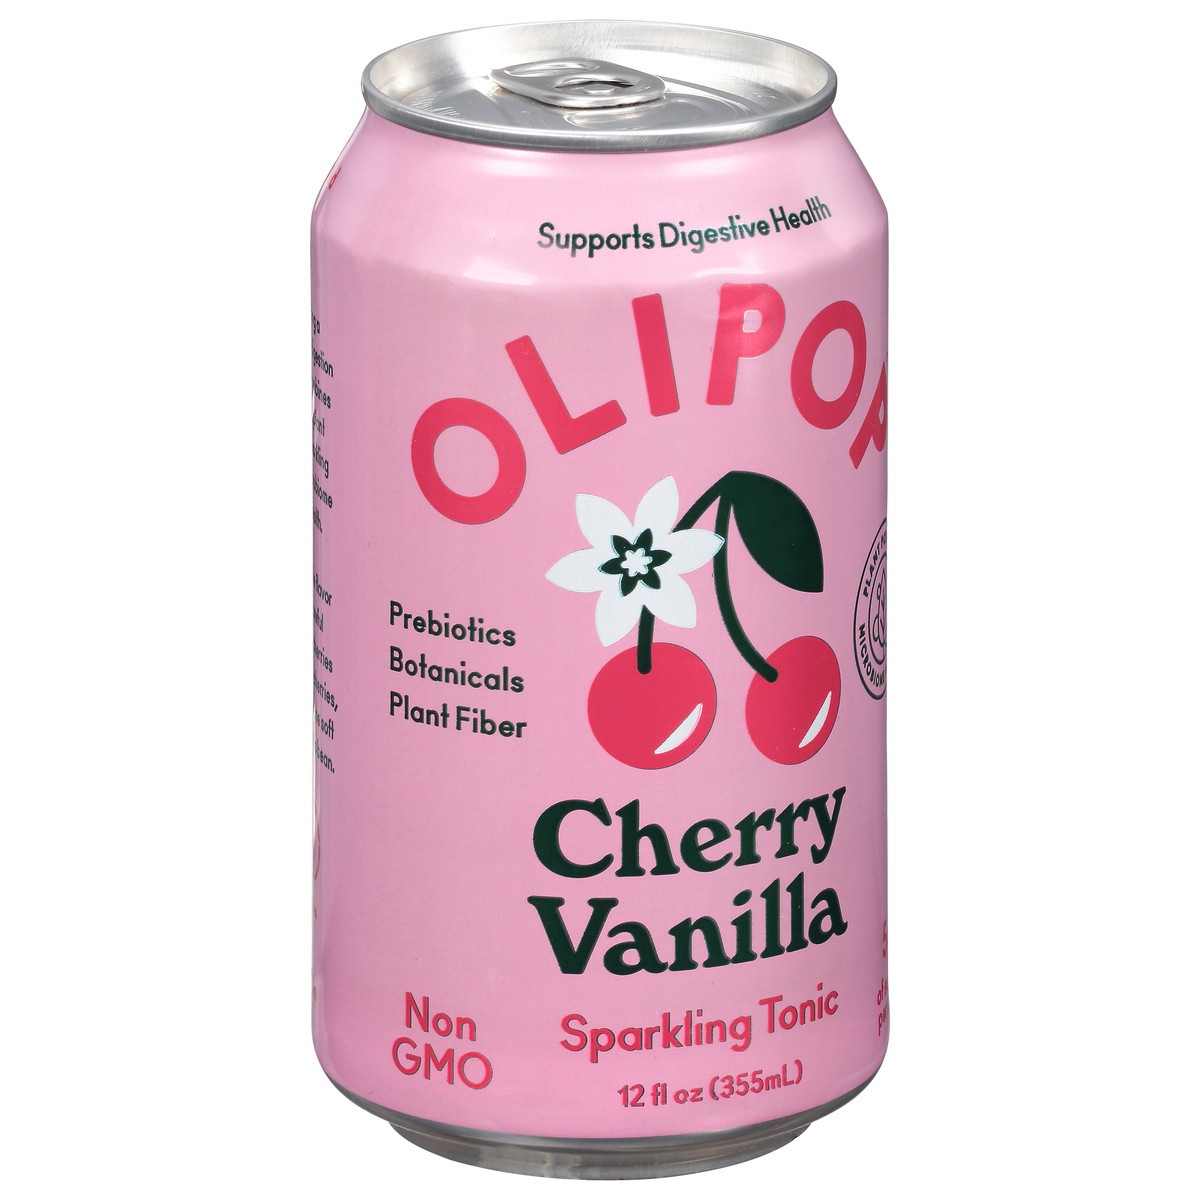 slide 6 of 9, Olipop Cherry Vanilla Sparkling Tonic, 12 fl oz